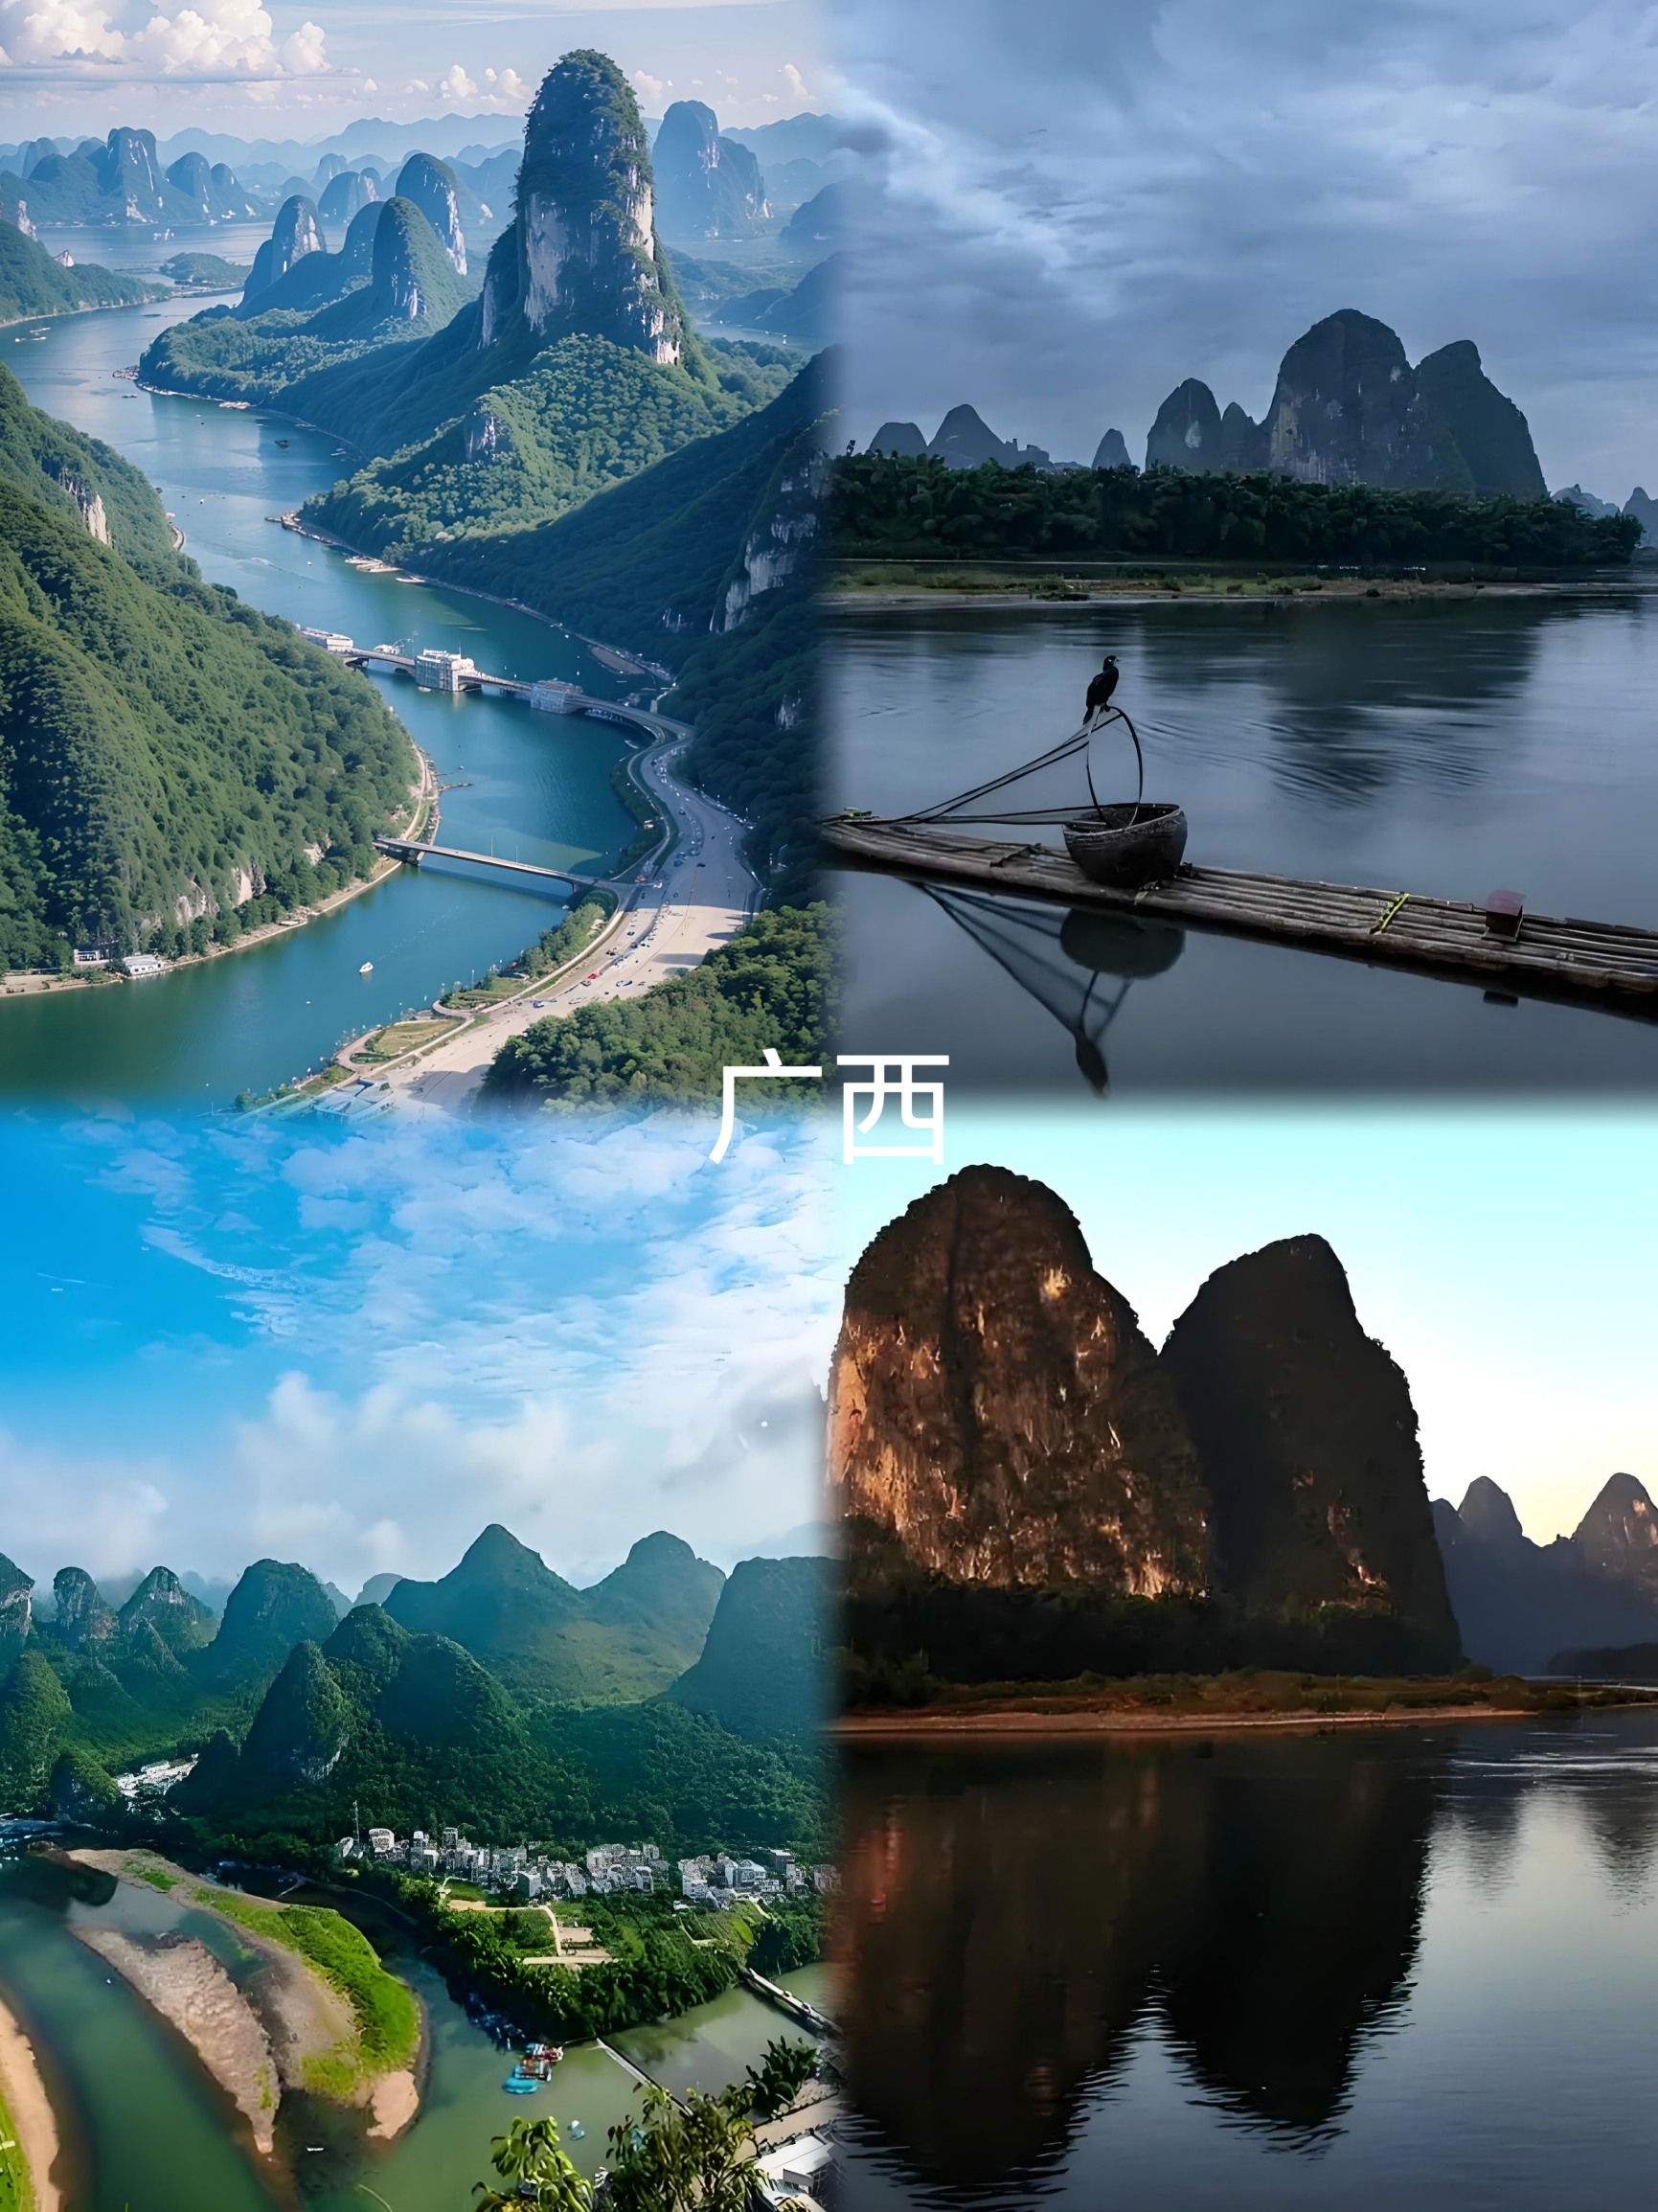 桂林，如诗如画的山水画卷。漓江的水清澈见底，如一条碧绿的丝带蜿蜒于群山之间，奇峰罗列，形态万千，每一